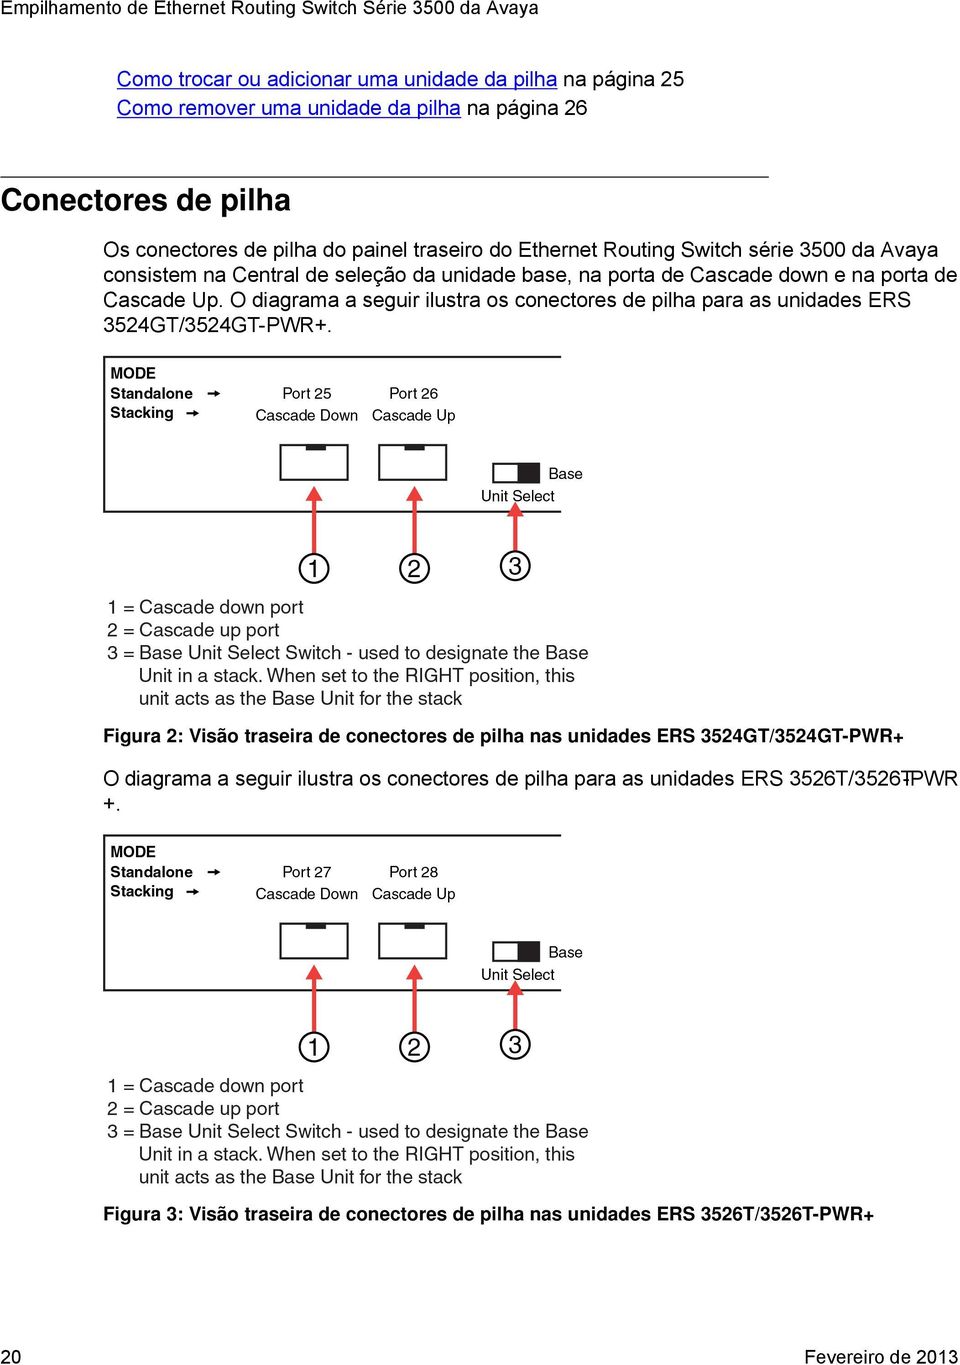 Up. O diagrama a seguir ilustra os conectores de pilha para as unidades ERS 3524GT/3524GT-PWR+.